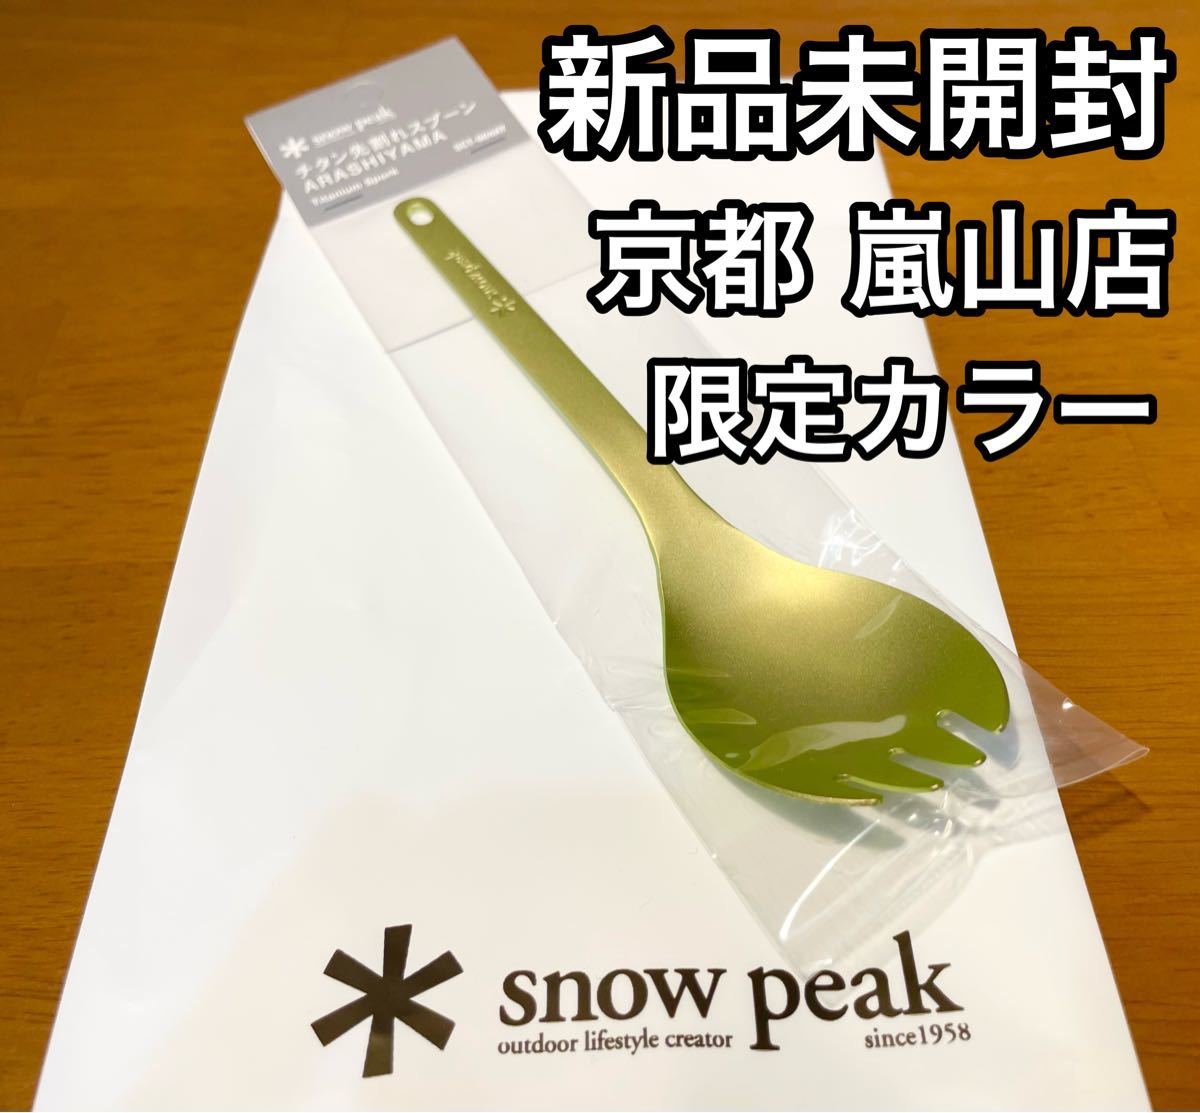 【新品未使用】 Snowpeak スノーピーク チタン先割れスプーン 嵐山限定品